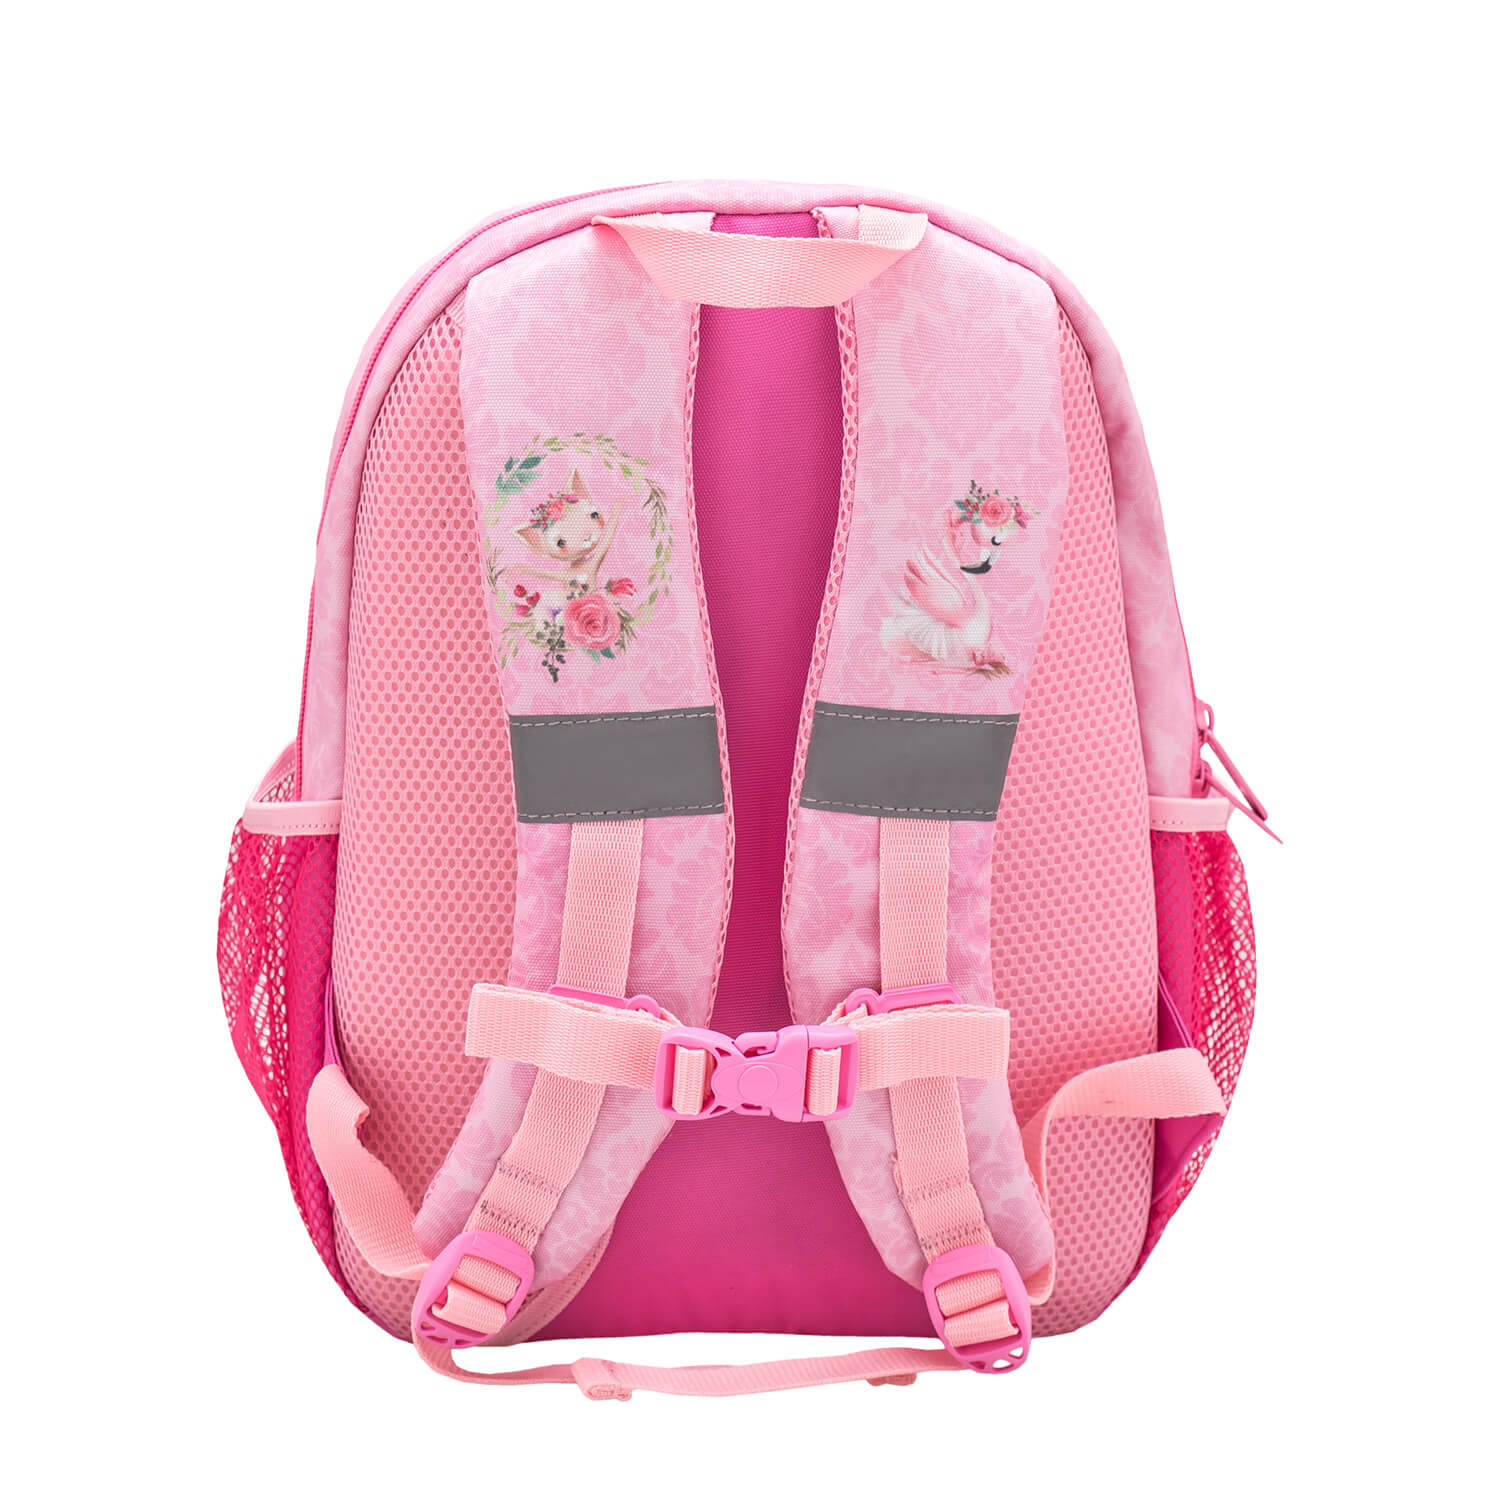 Kiddy Plus Ballerina Kindergarten Bag